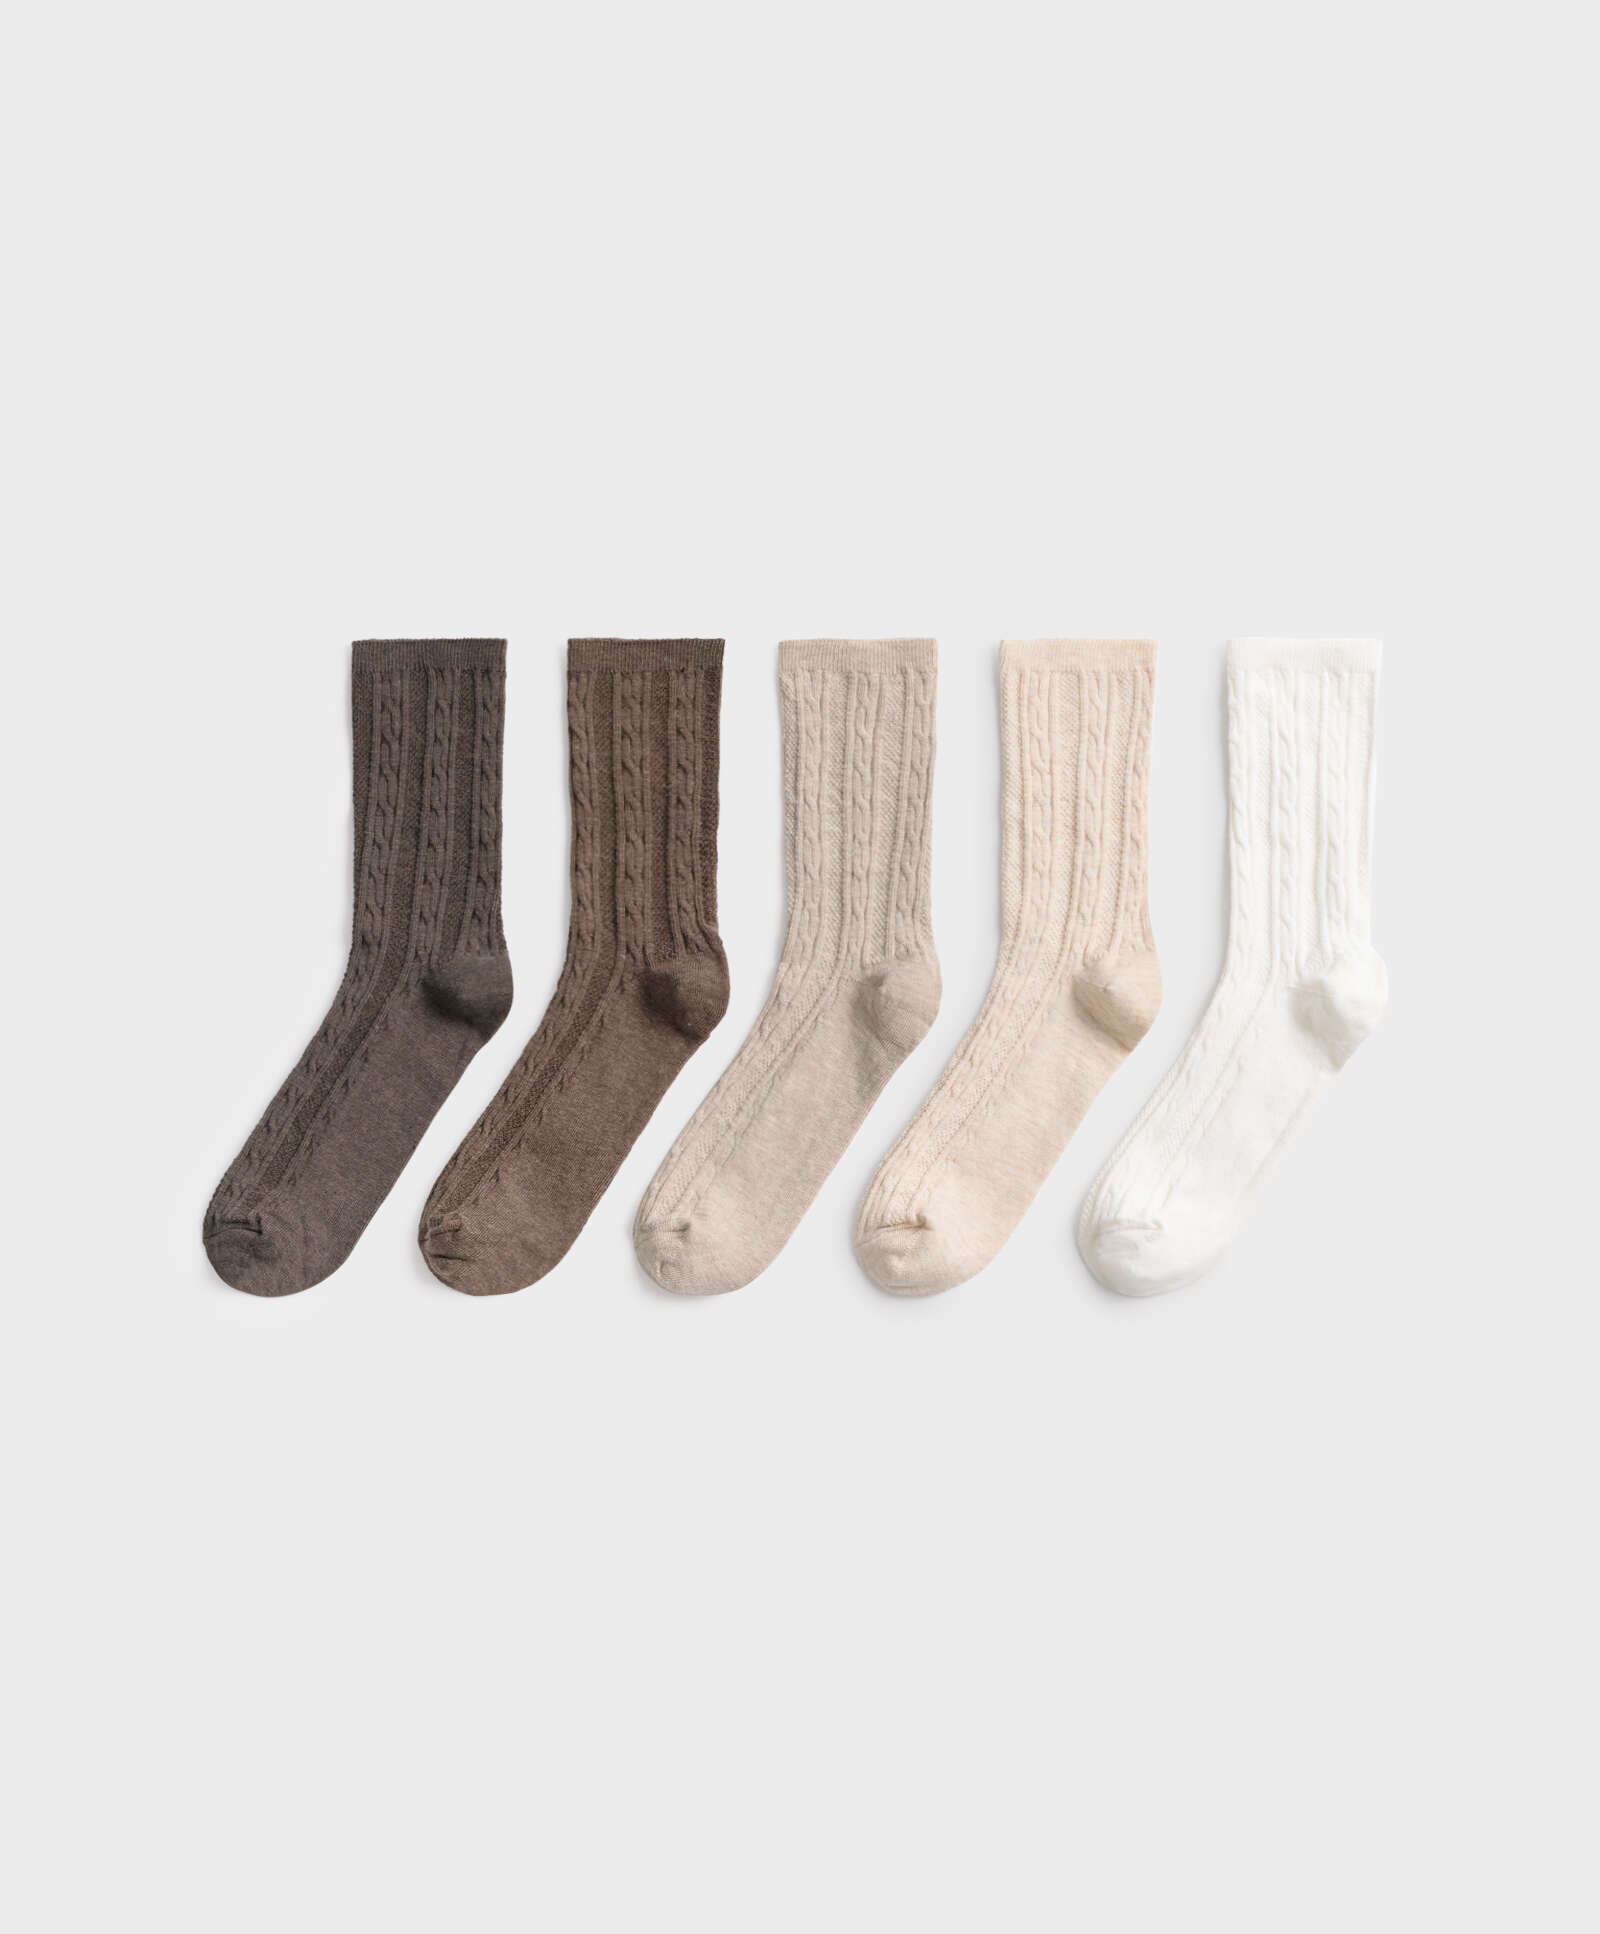 5 ζεύγη βαμβακερές κάλτσες με σχέδιο ύφανσης